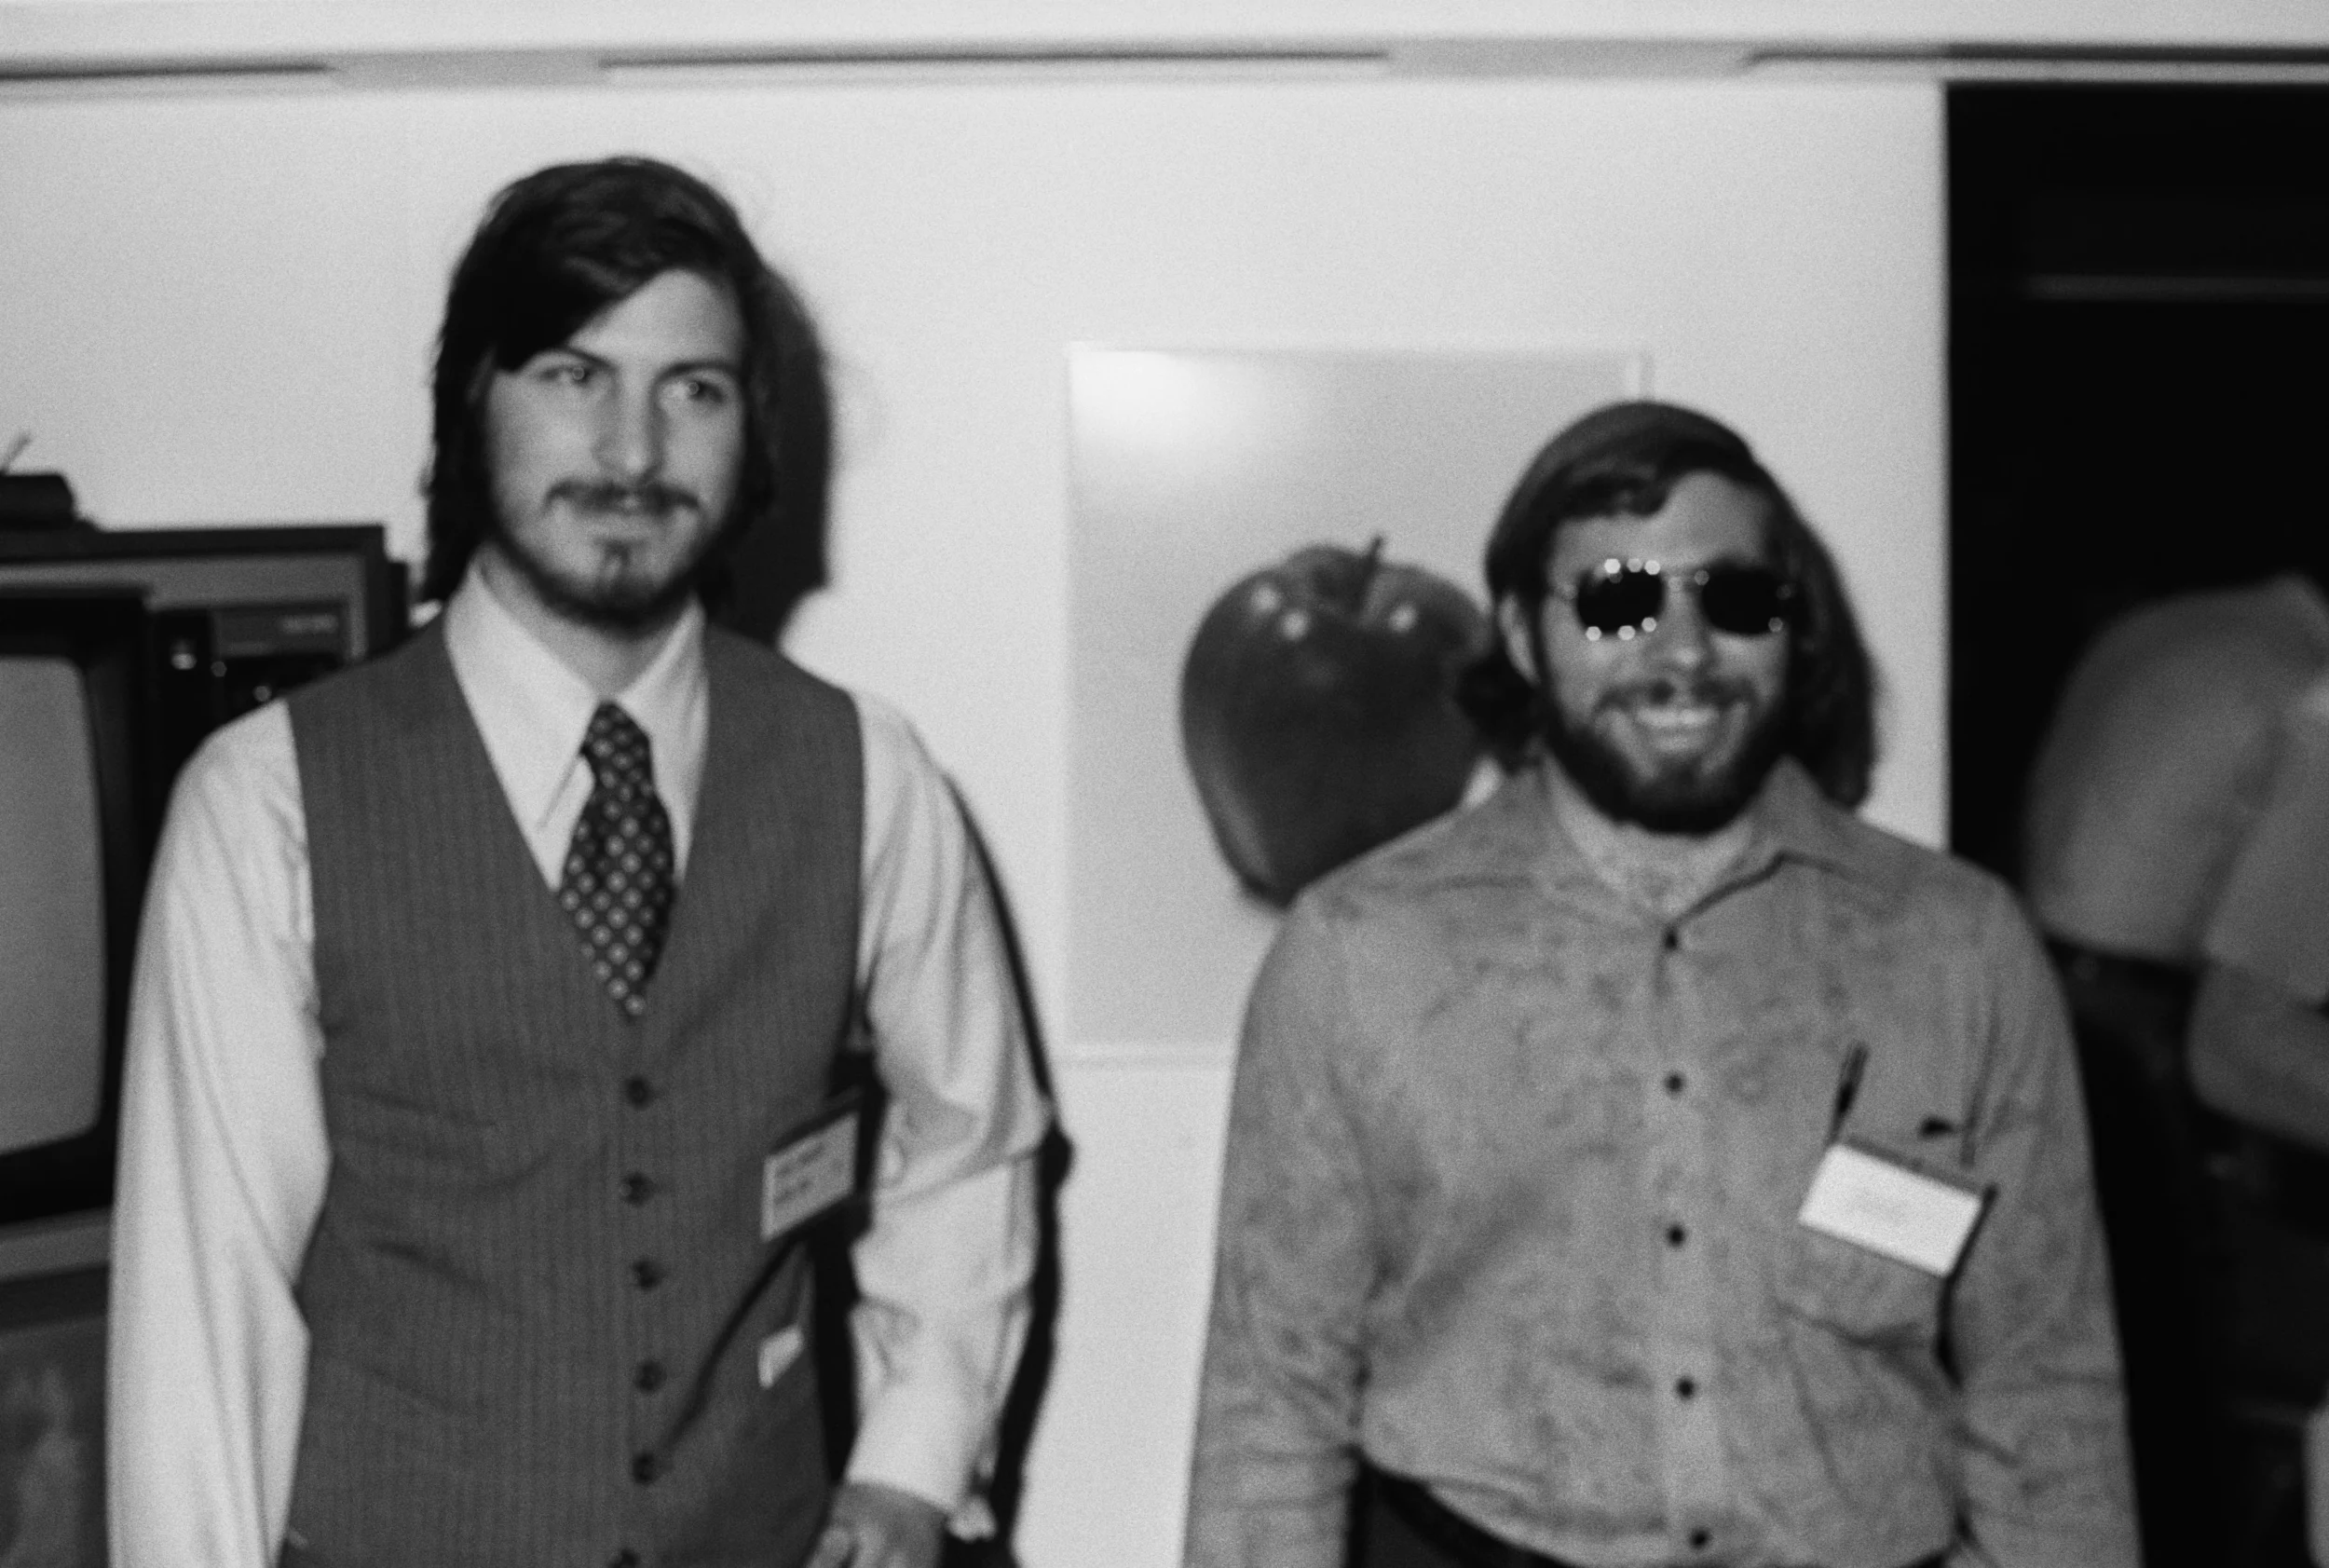 Steve Wozniak e Steve Jobs